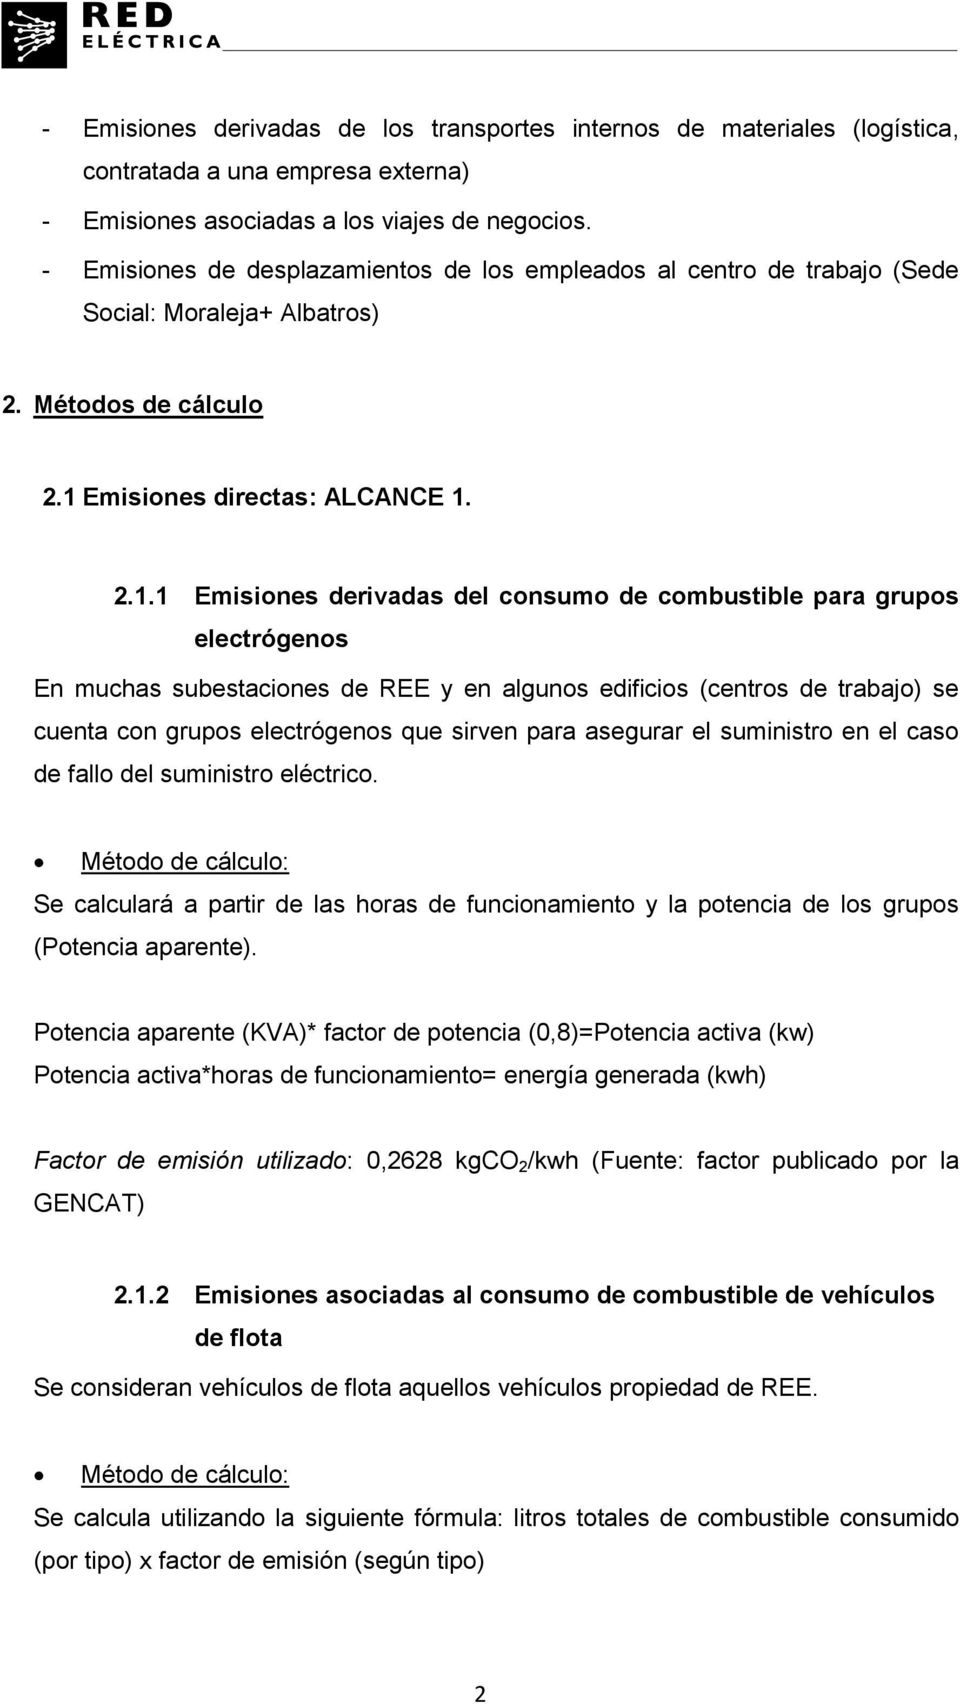 Emisiones directas: ALCANCE 1.